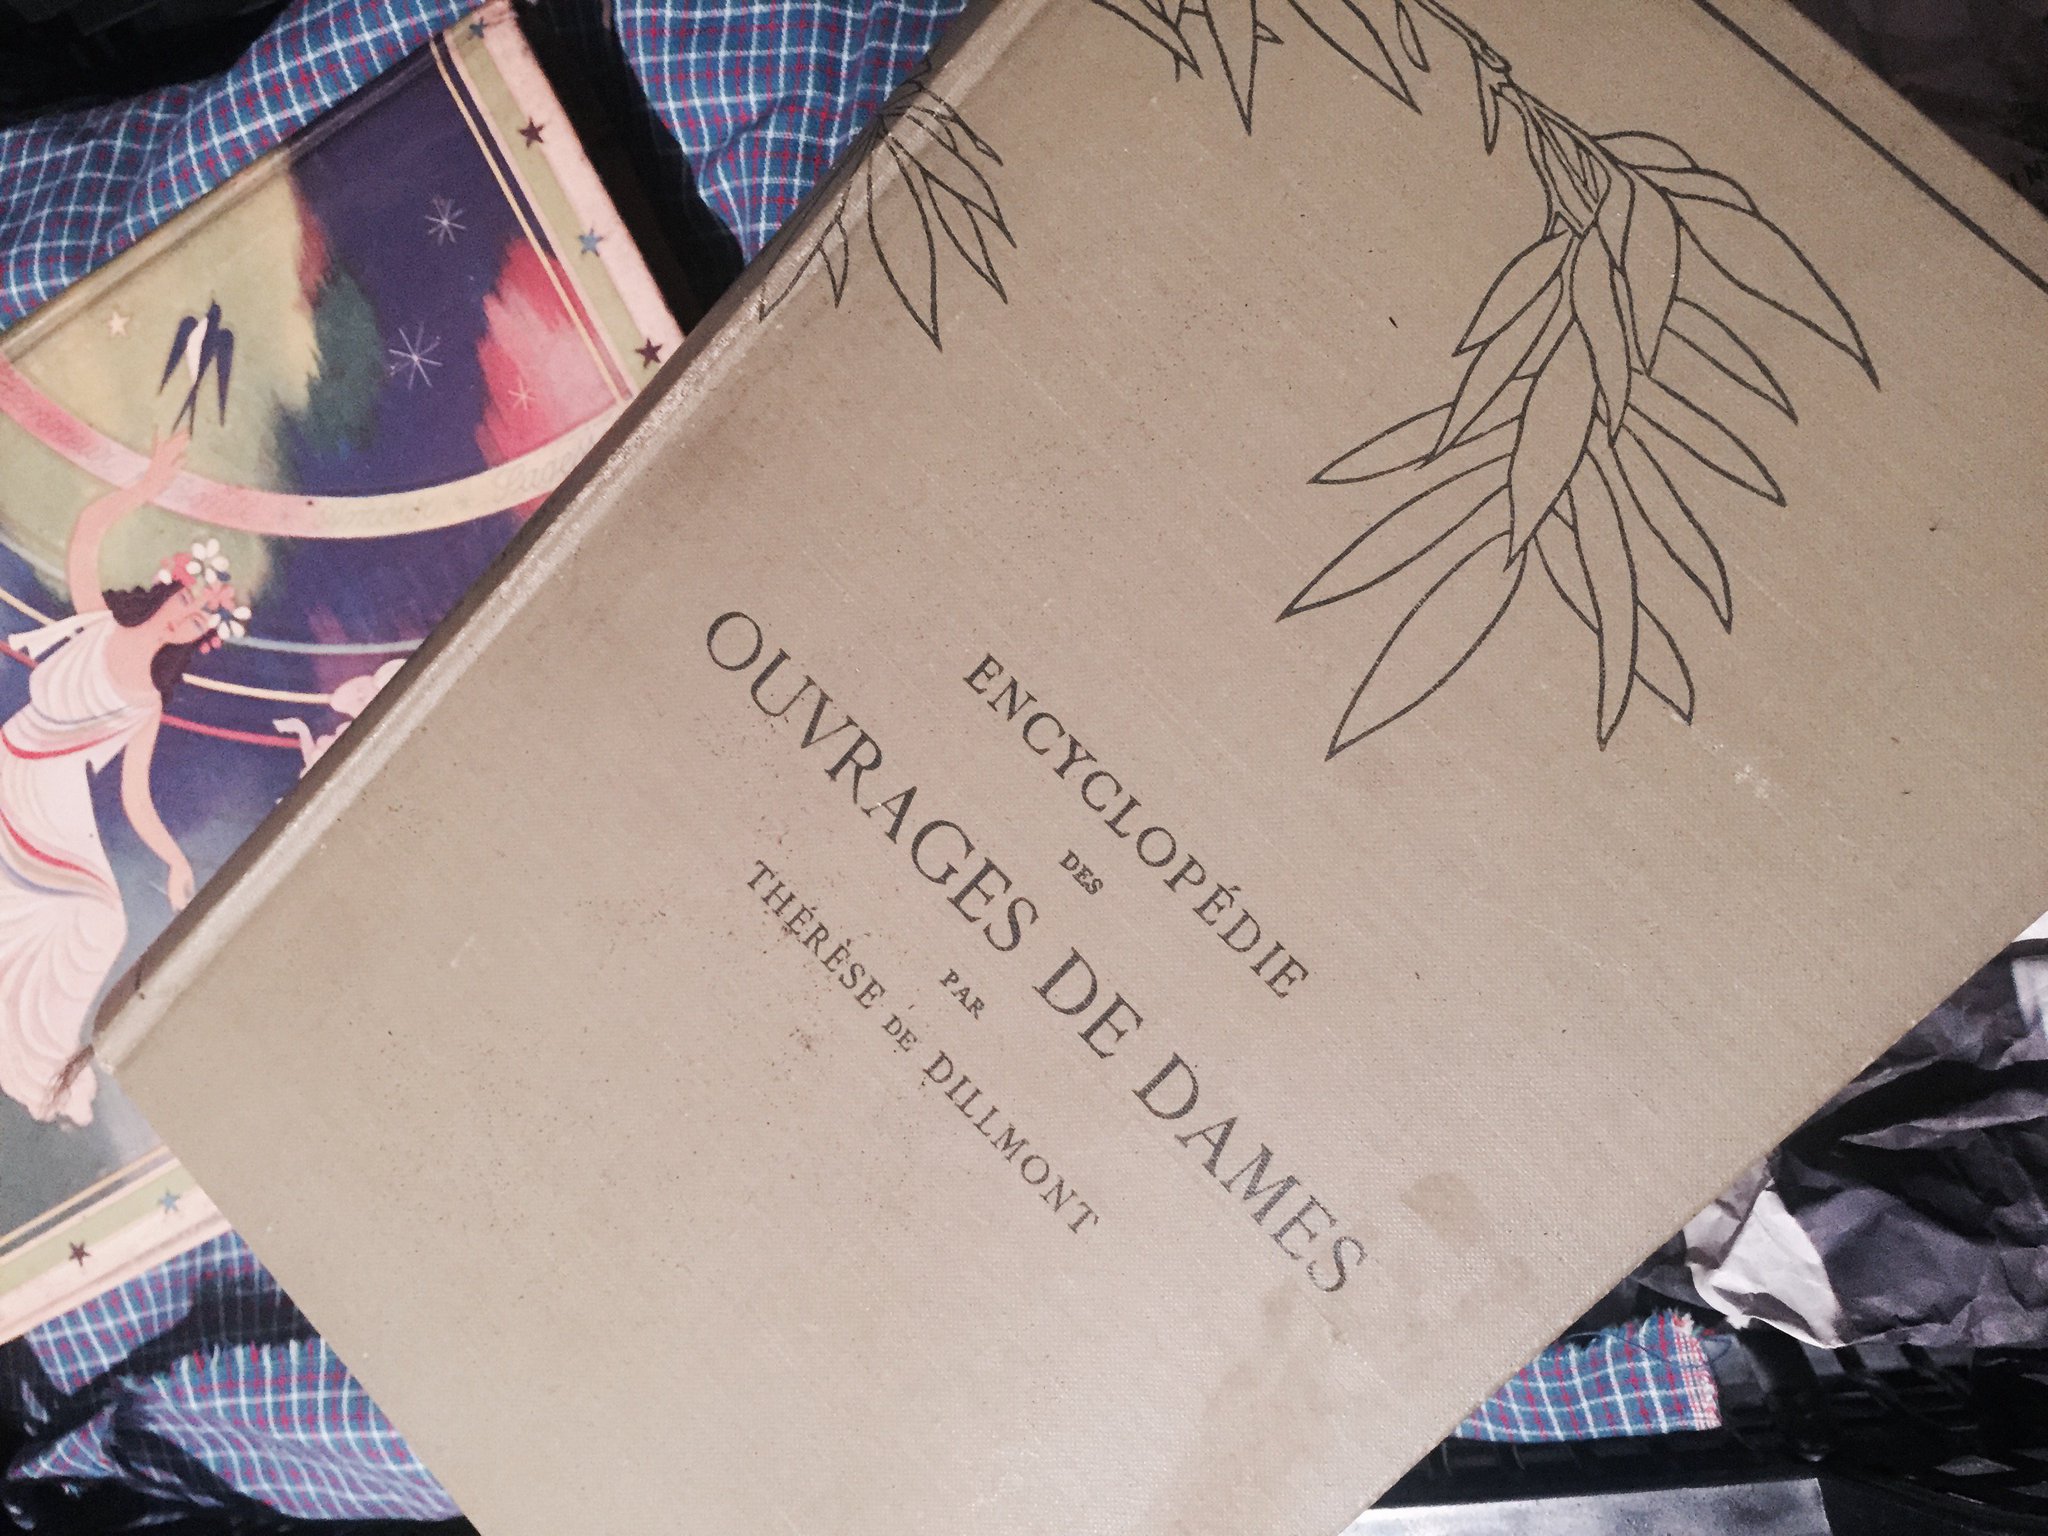 A propos de couture il y a dans la cave une "Encyclopédie des ouvrages de dames" #Madeleineproject https://t.co/10d5zegsw1